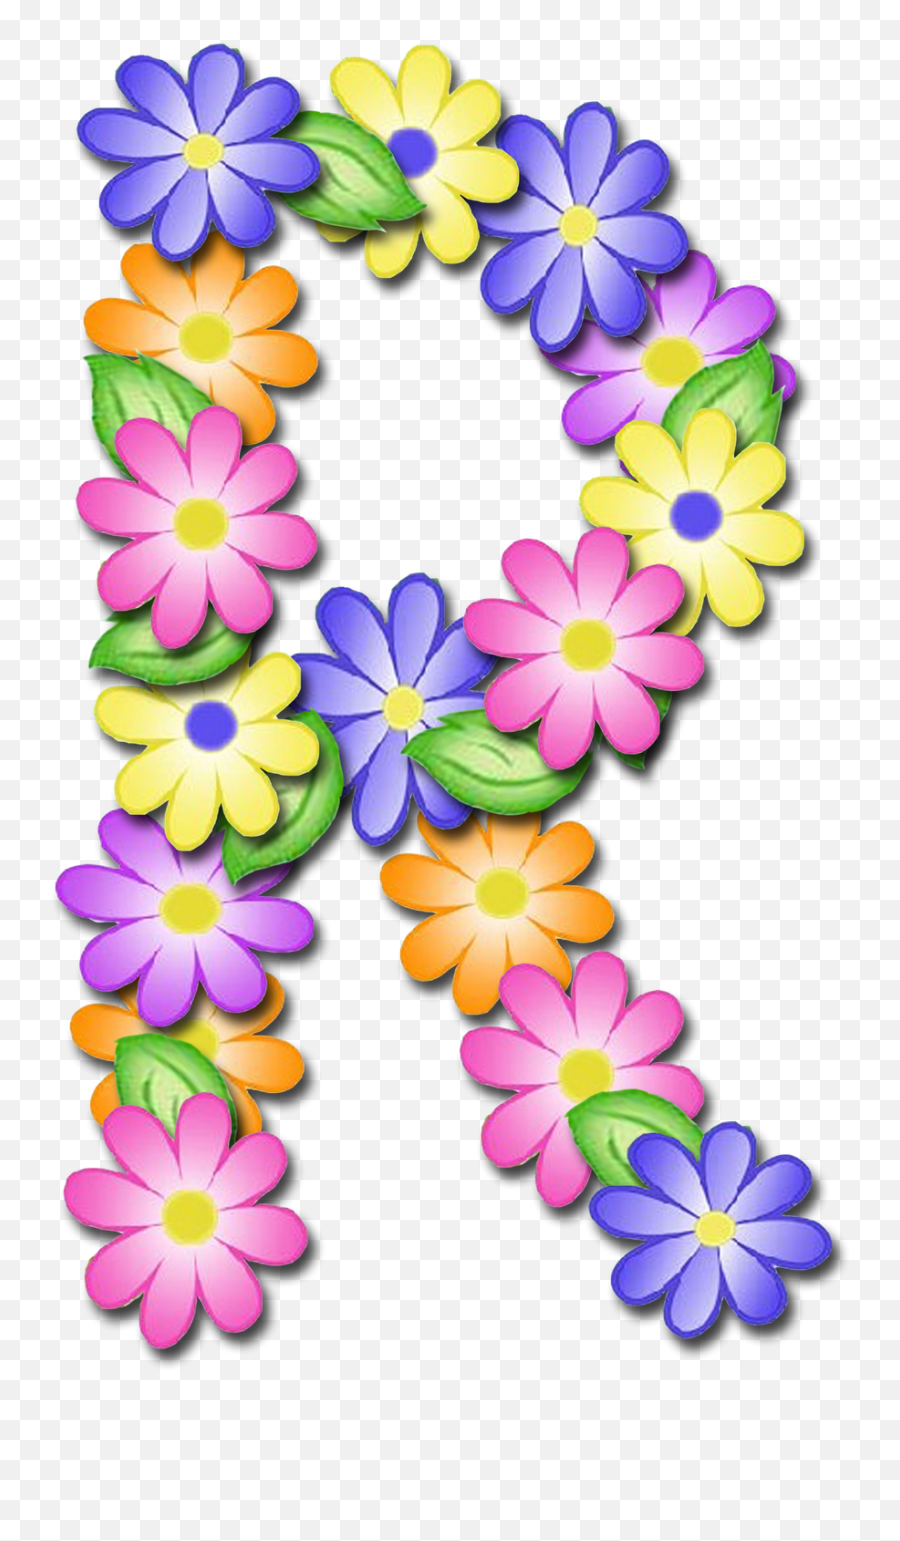 Download Curtido Curtir Compartilhar - Letras En Flores R Emoji,Florais Png